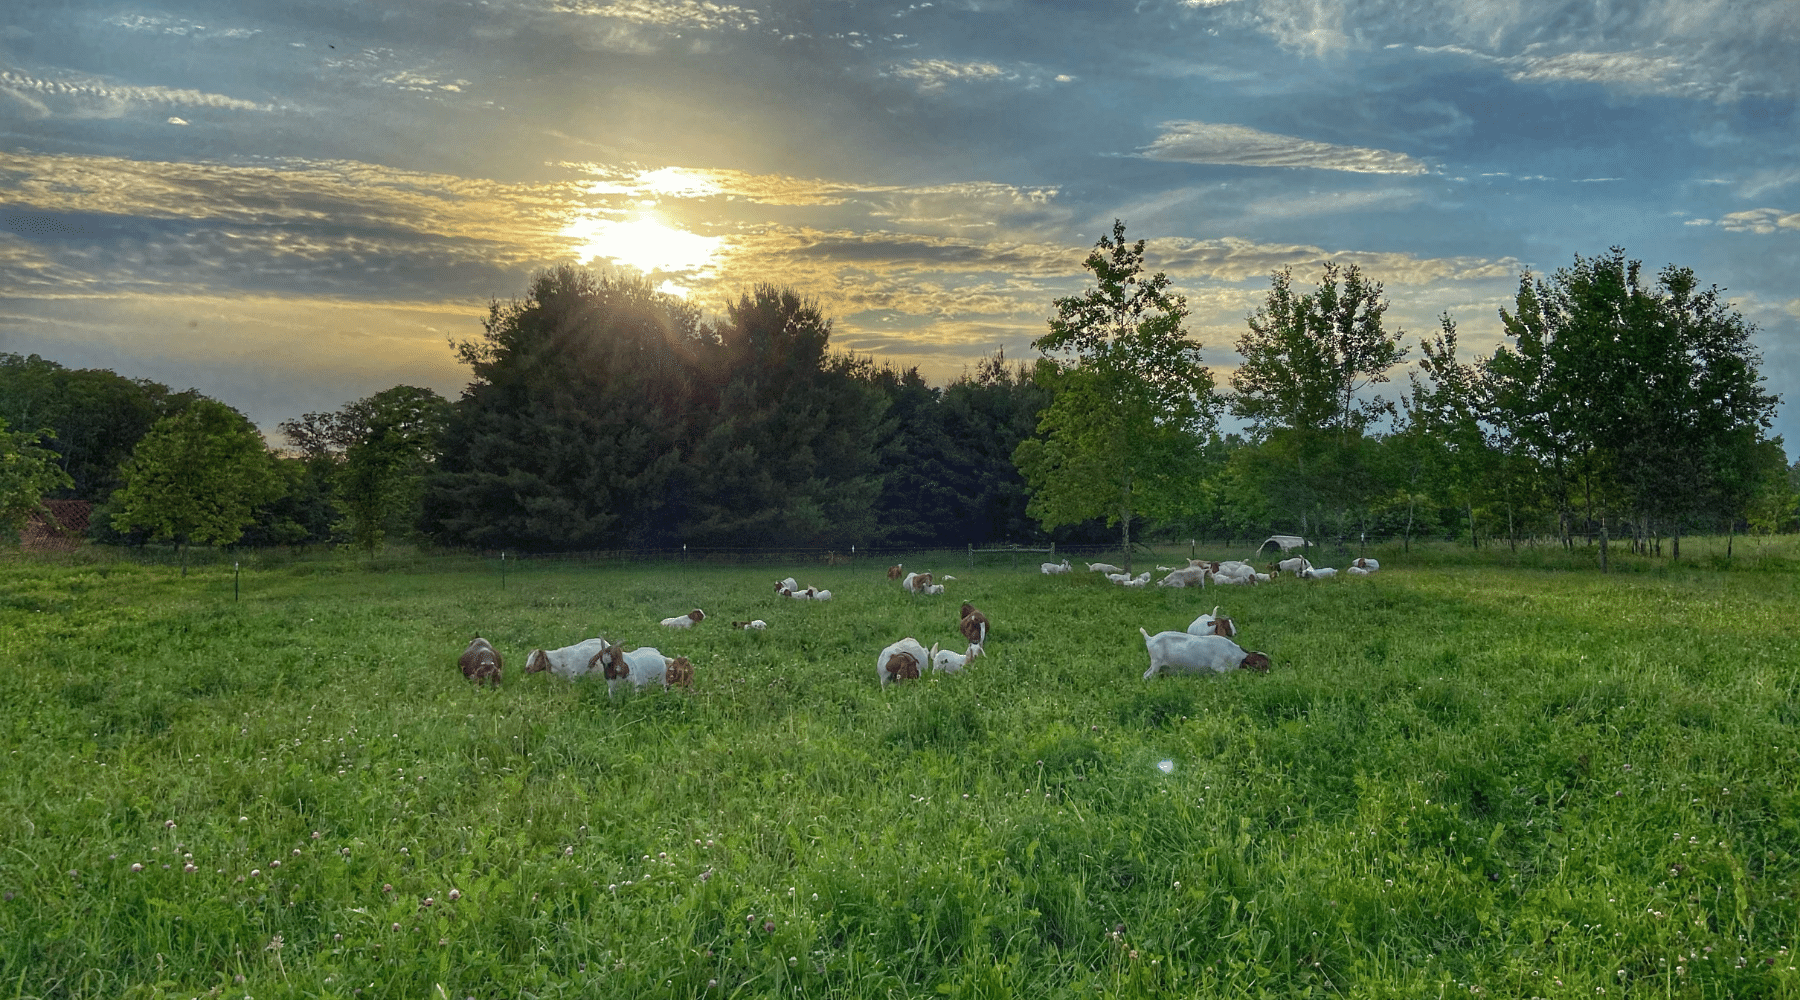 Local farm raising pasture fed goat meat.